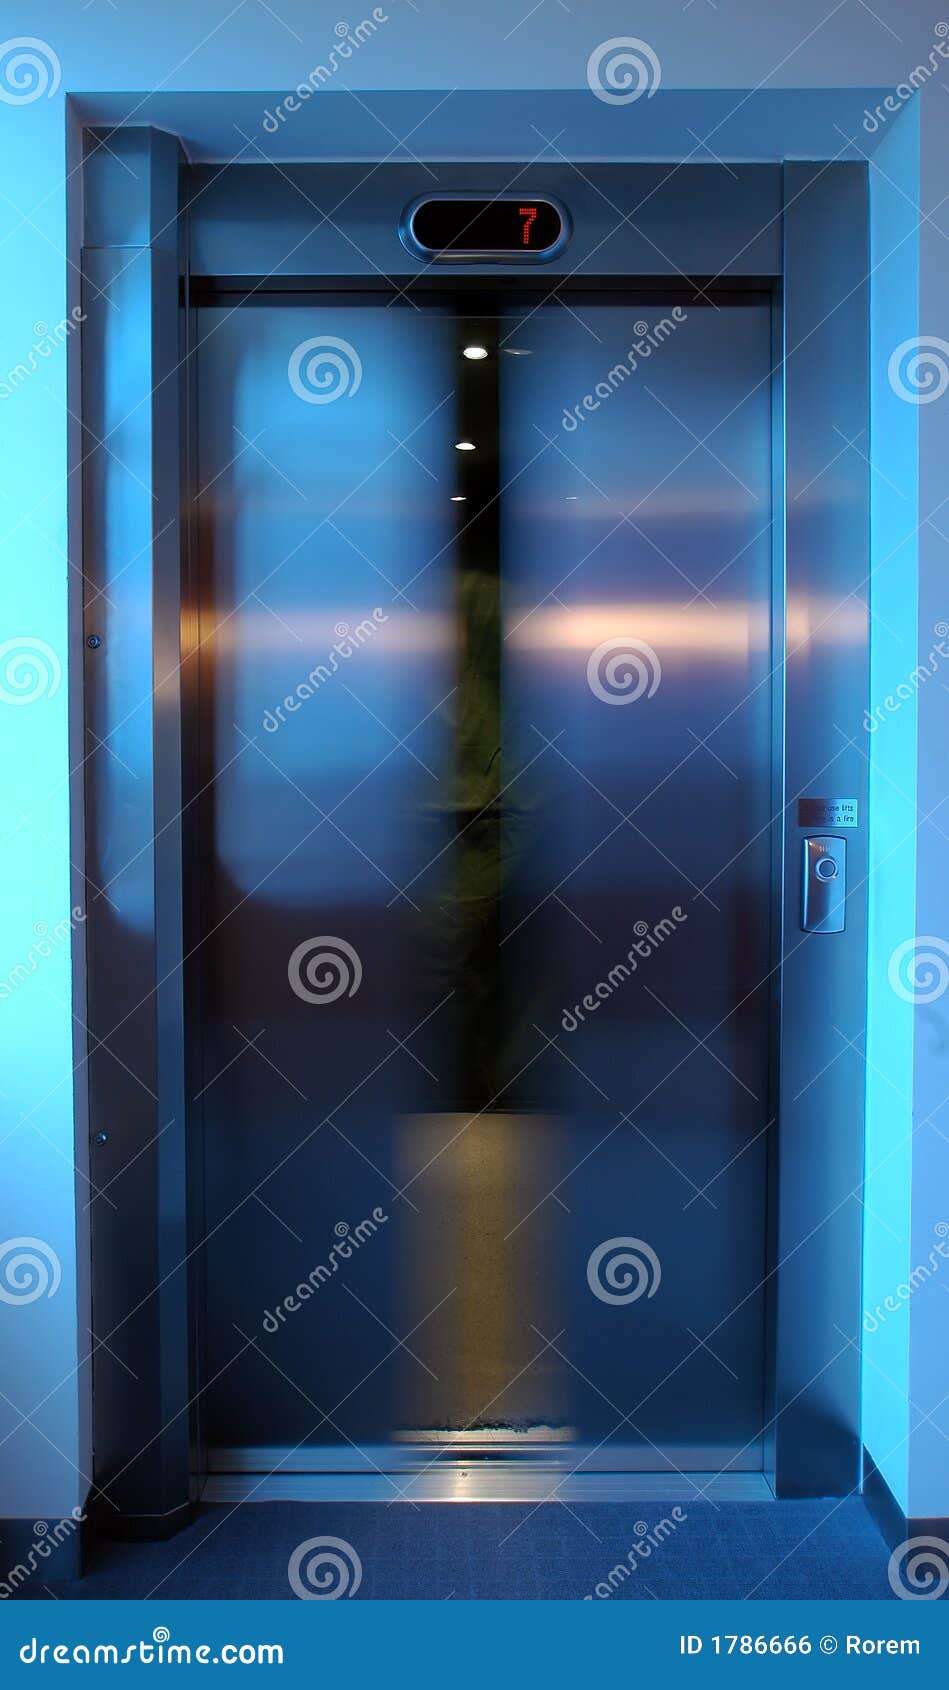 lift door closing